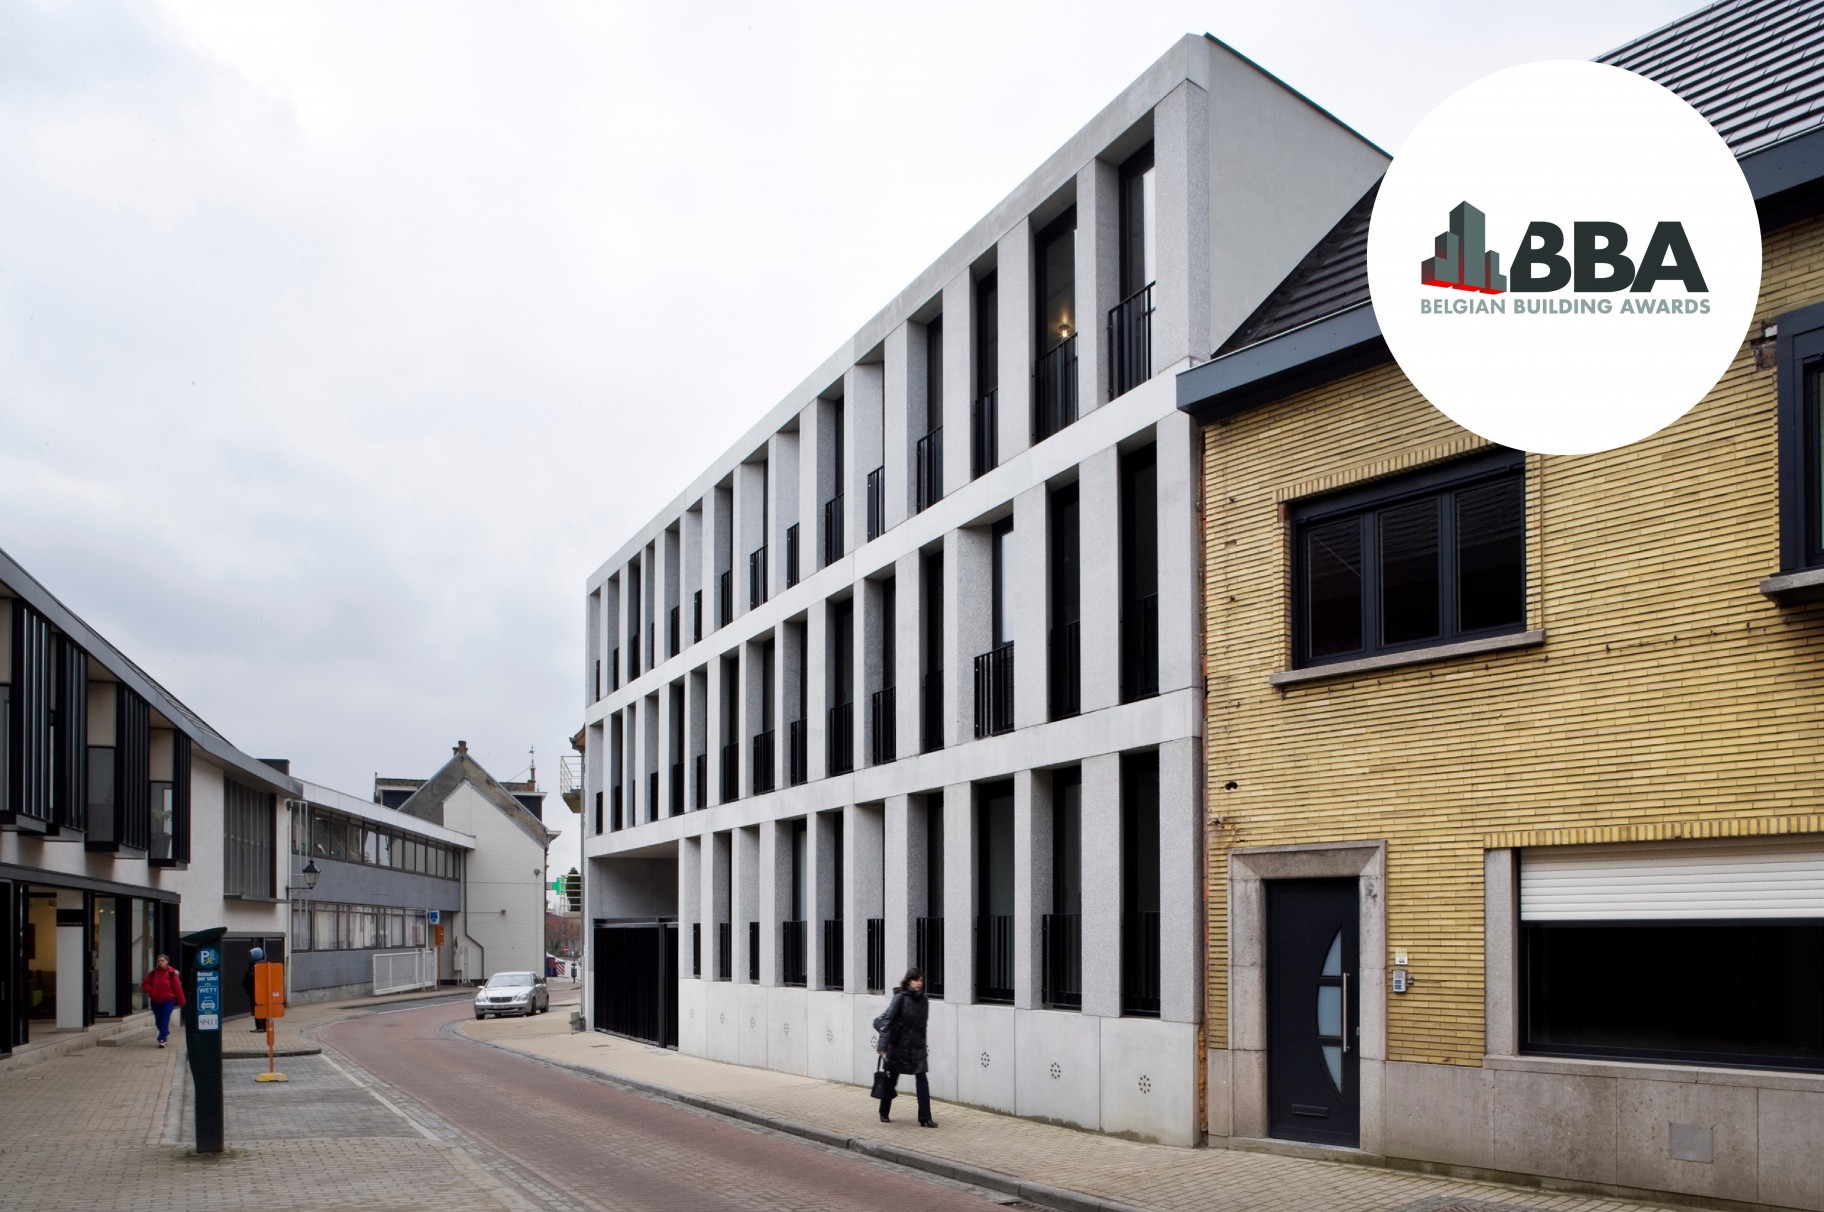 Appartementen Oosterlinck Wetteren wint Belgian Building Award 2013!